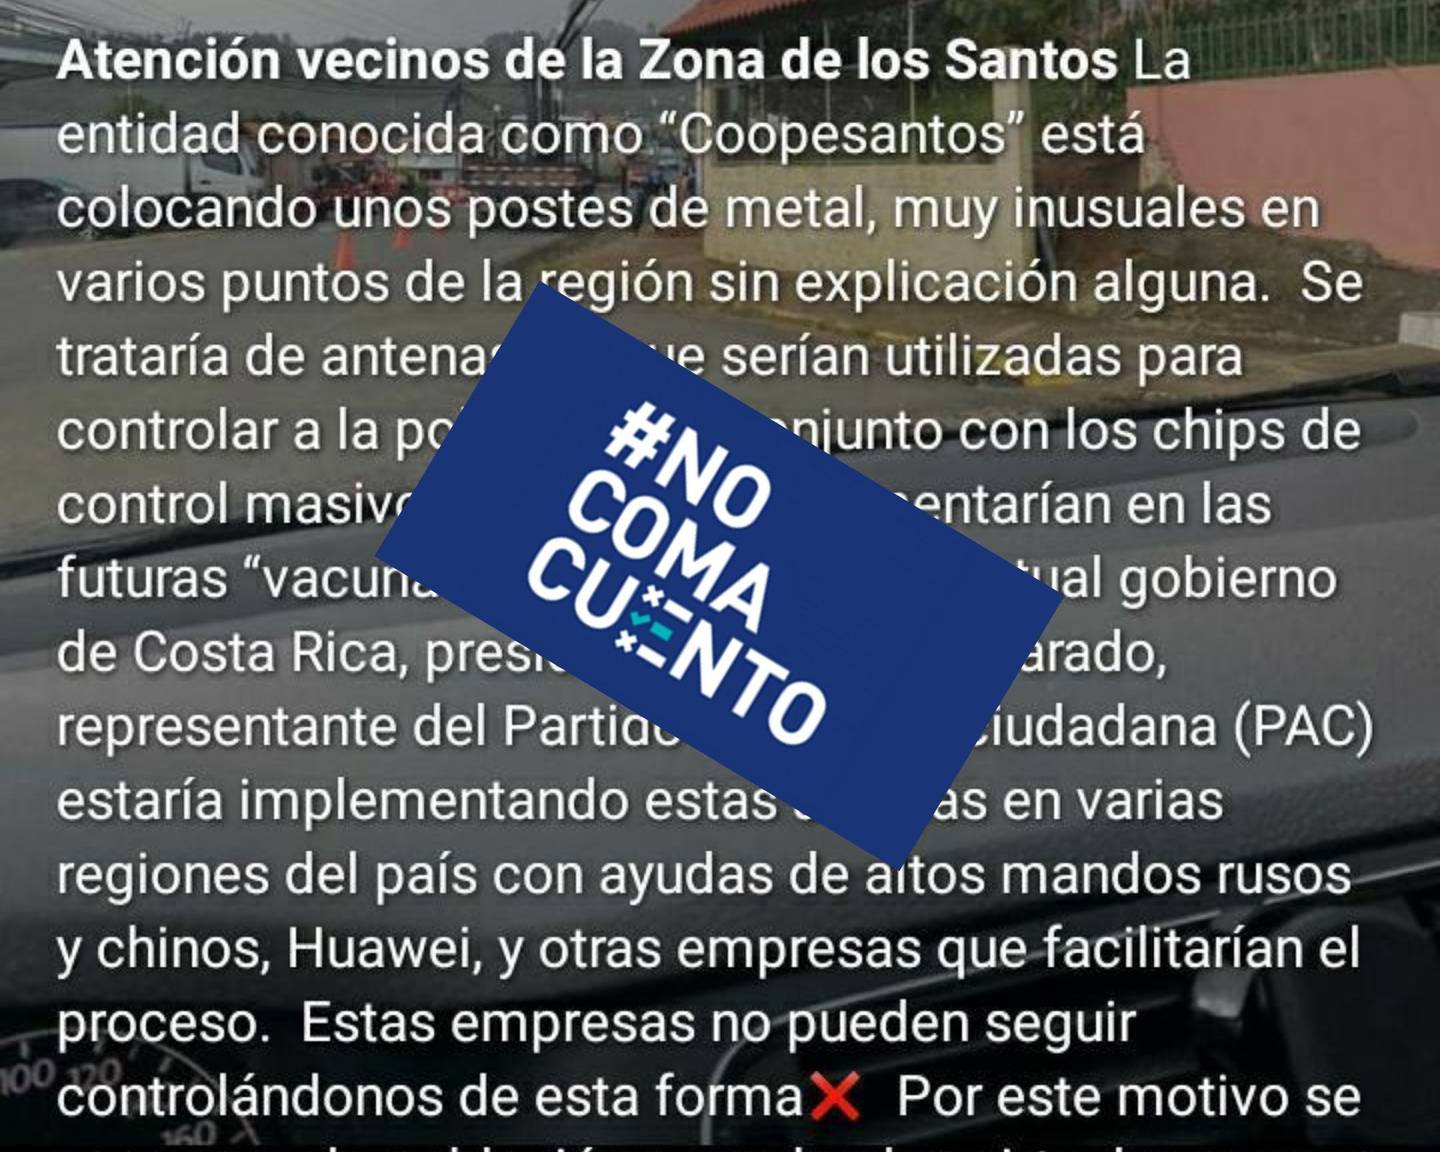 Esta falsa publicación, que circula en redes sociales, asegura que Coopesantos está instalando postes en la zona de Los Santos "para controlar a la población".